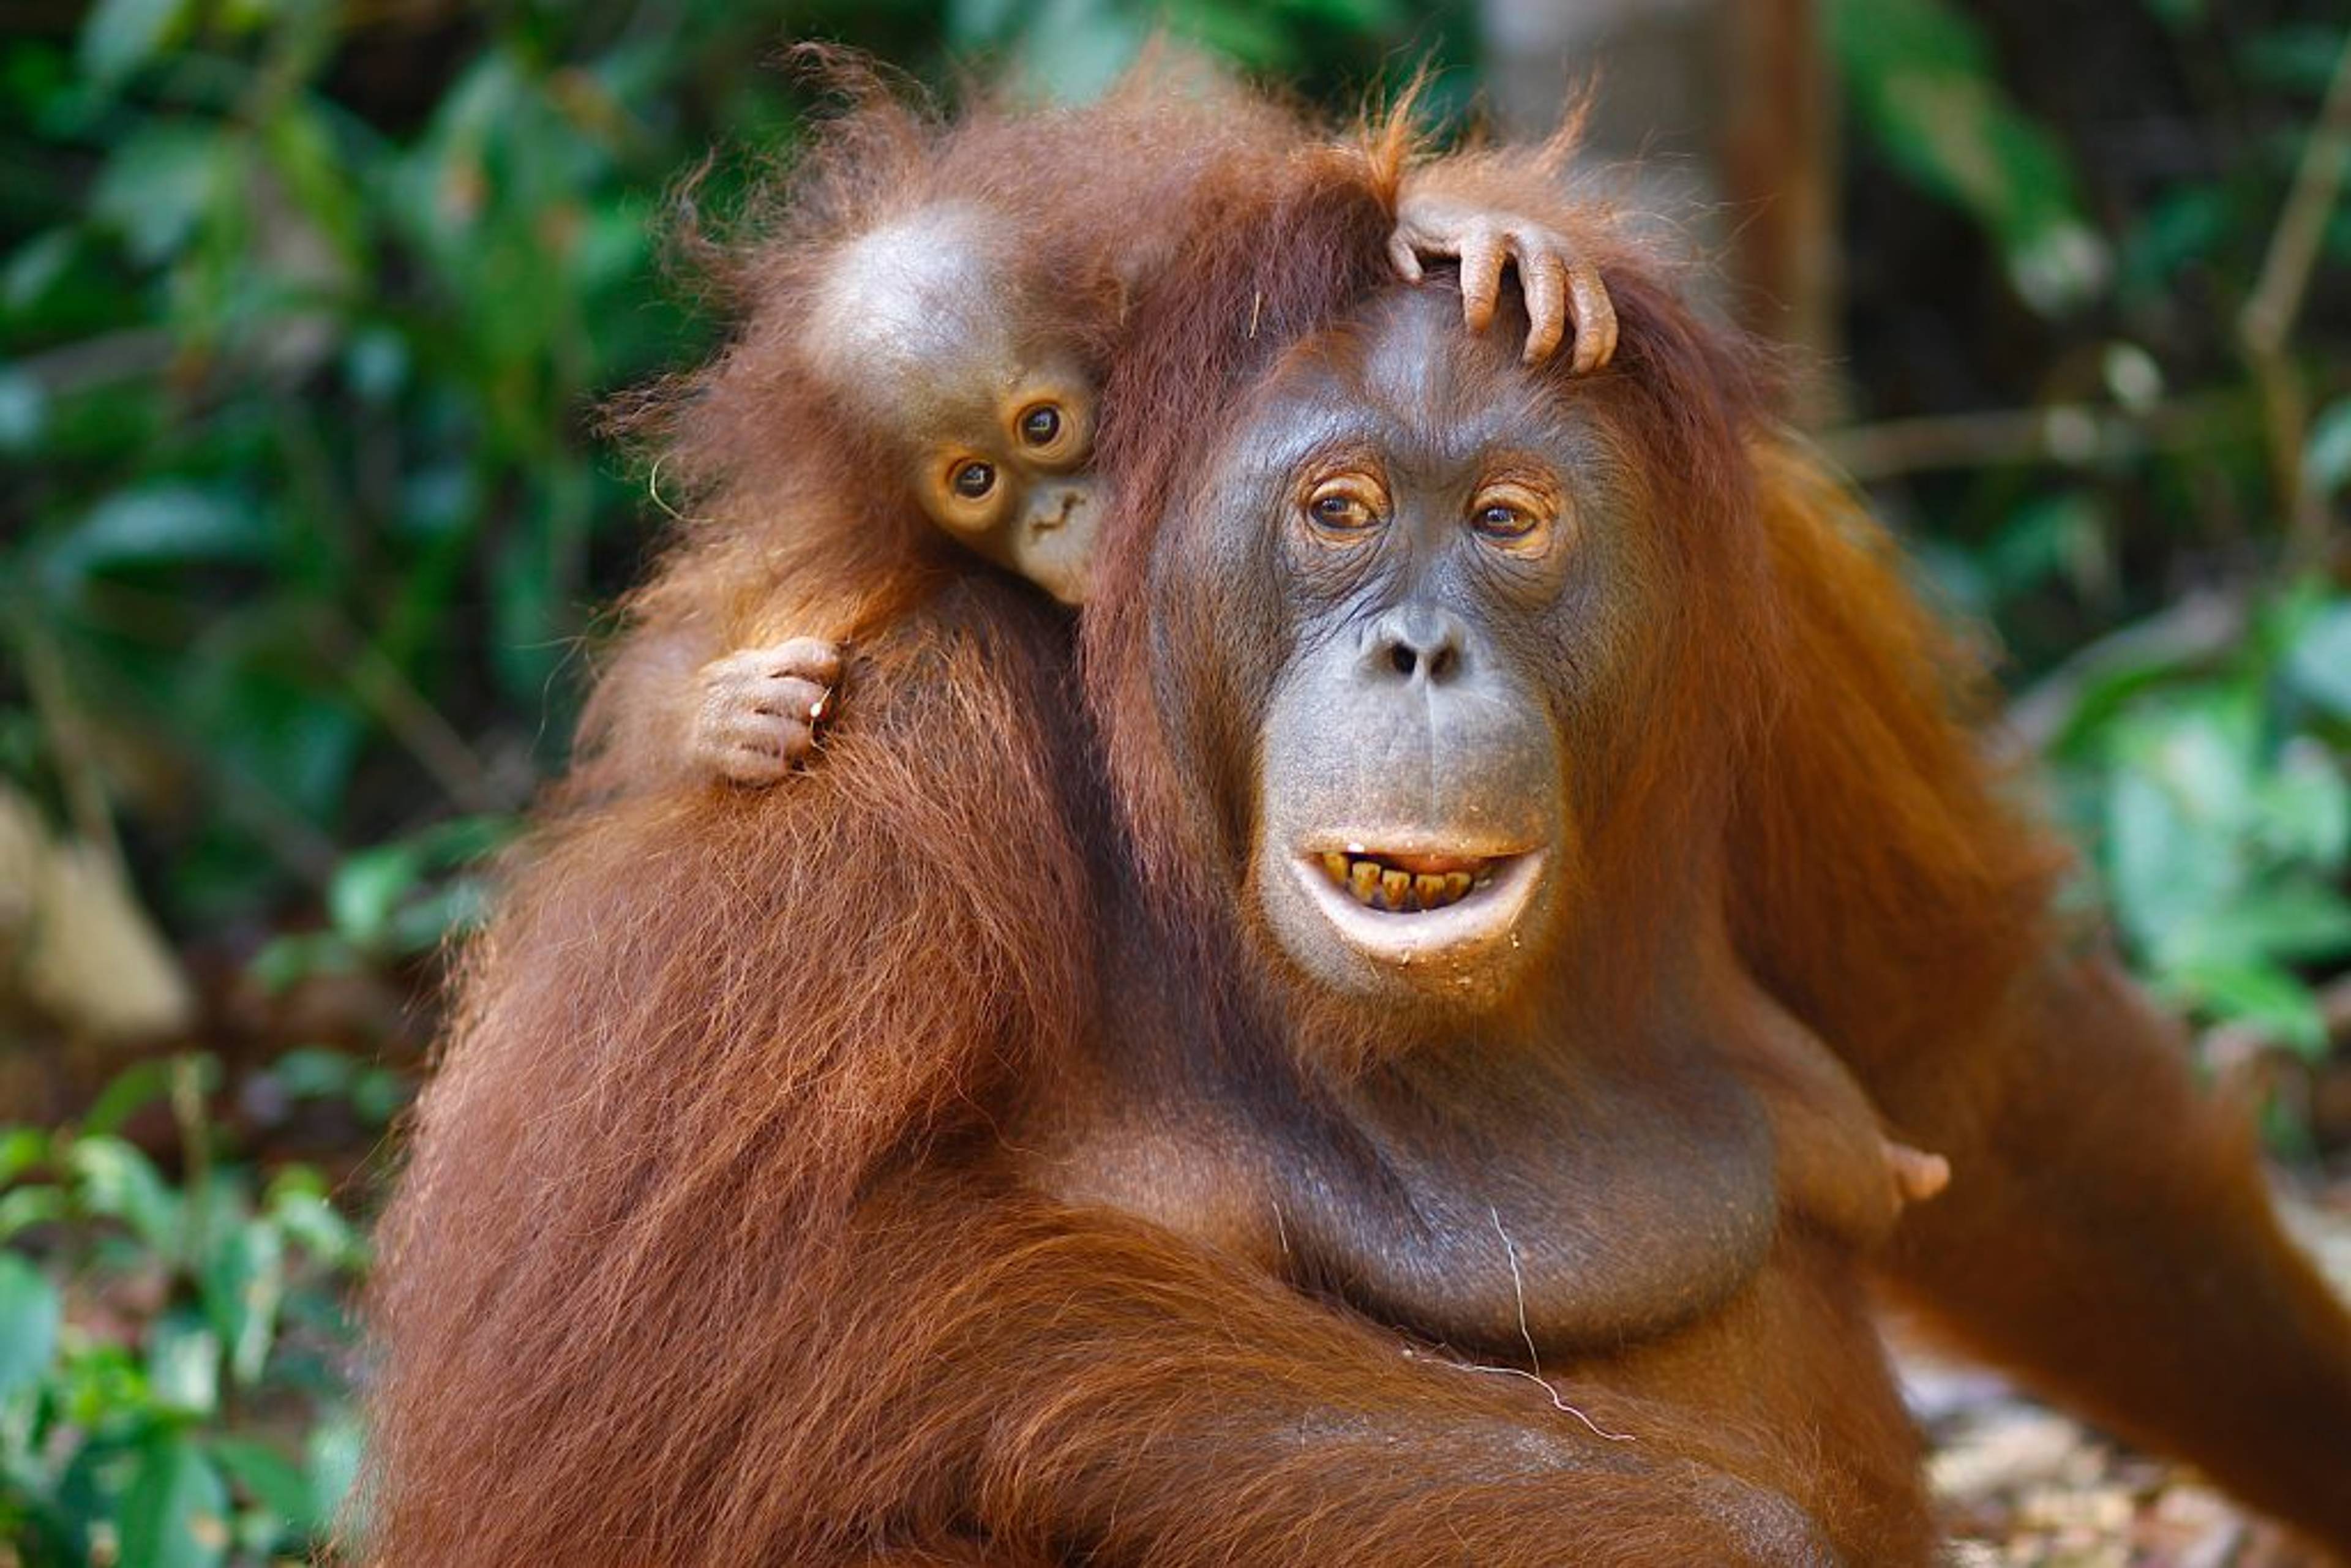 Orangutans find safe habitat in Central Kalimantan jungle. 